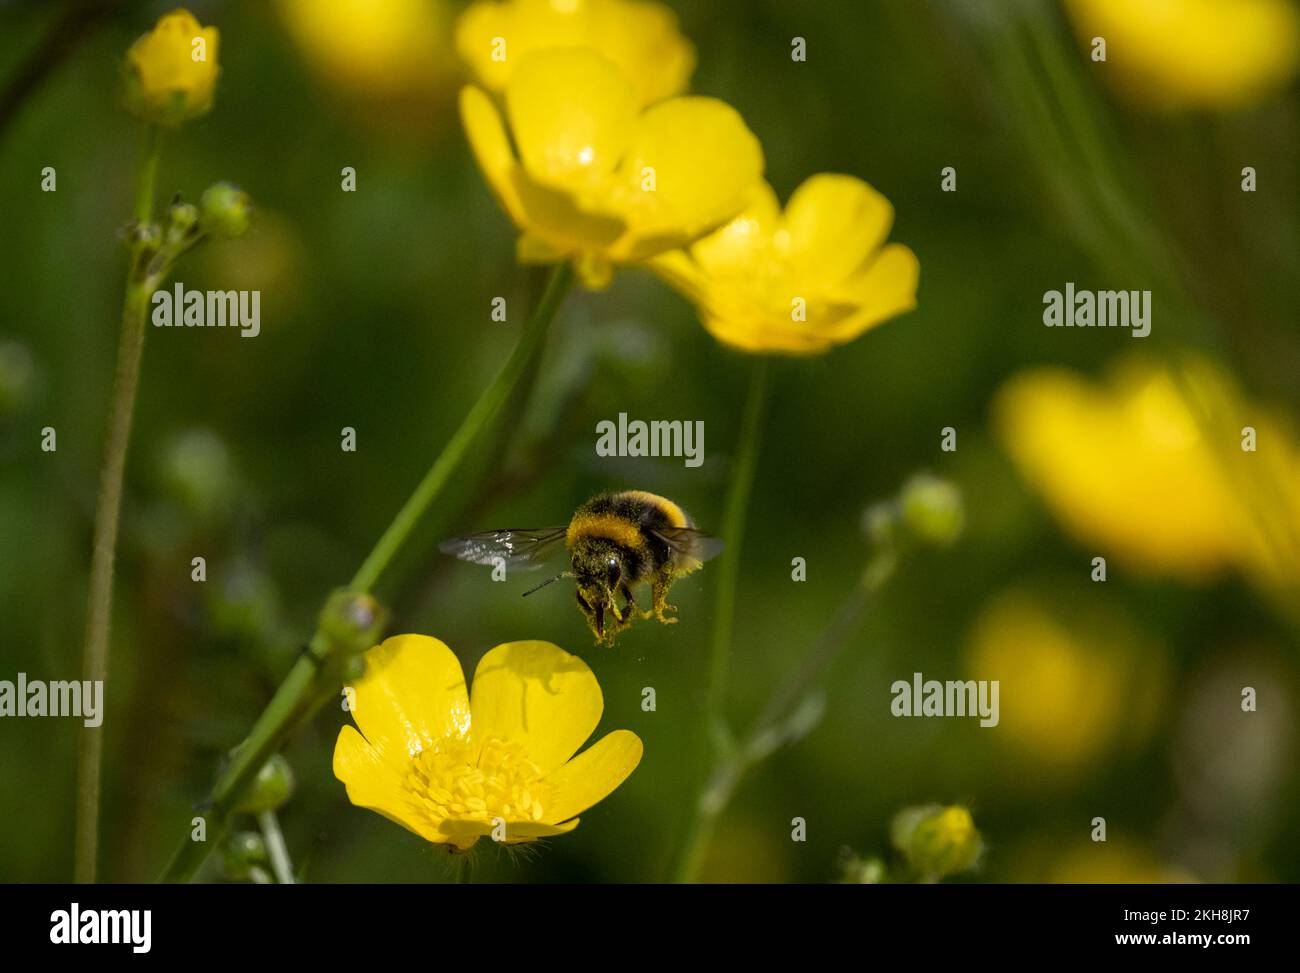 Le bourdon à queue blanche (Bombus lucorum) perturbe le pollen chez Buttercup Meadow, Northwich Woodlands, Cheshire, Angleterre, Royaume-Uni Banque D'Images